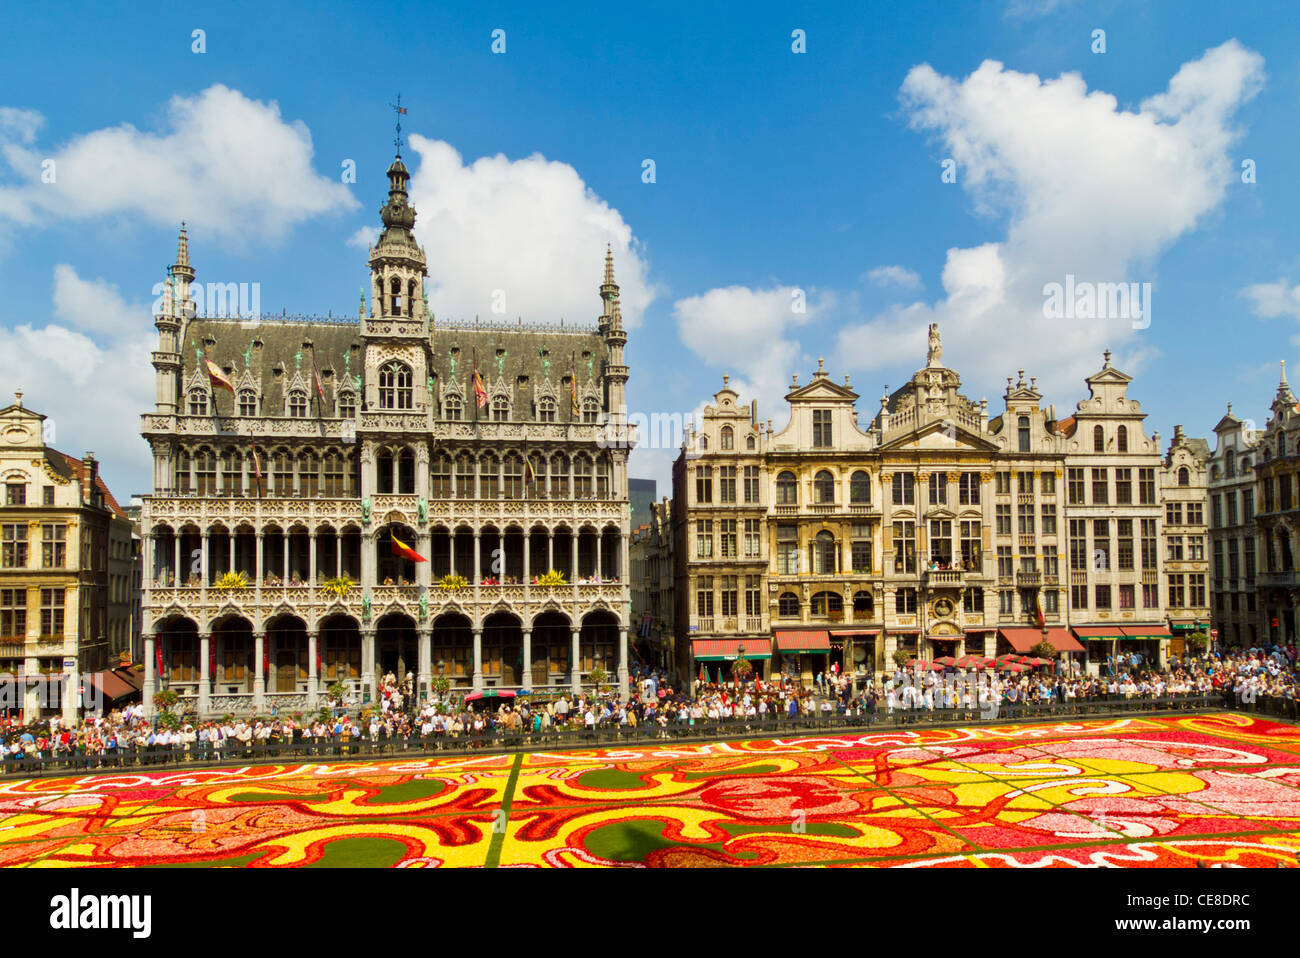 Bruxelles Grand place Bruxelles montrant le musée de la ville de Bruxelles et le tapis de fleur art déco thème Bruxelles Belgique UE Europe Banque D'Images